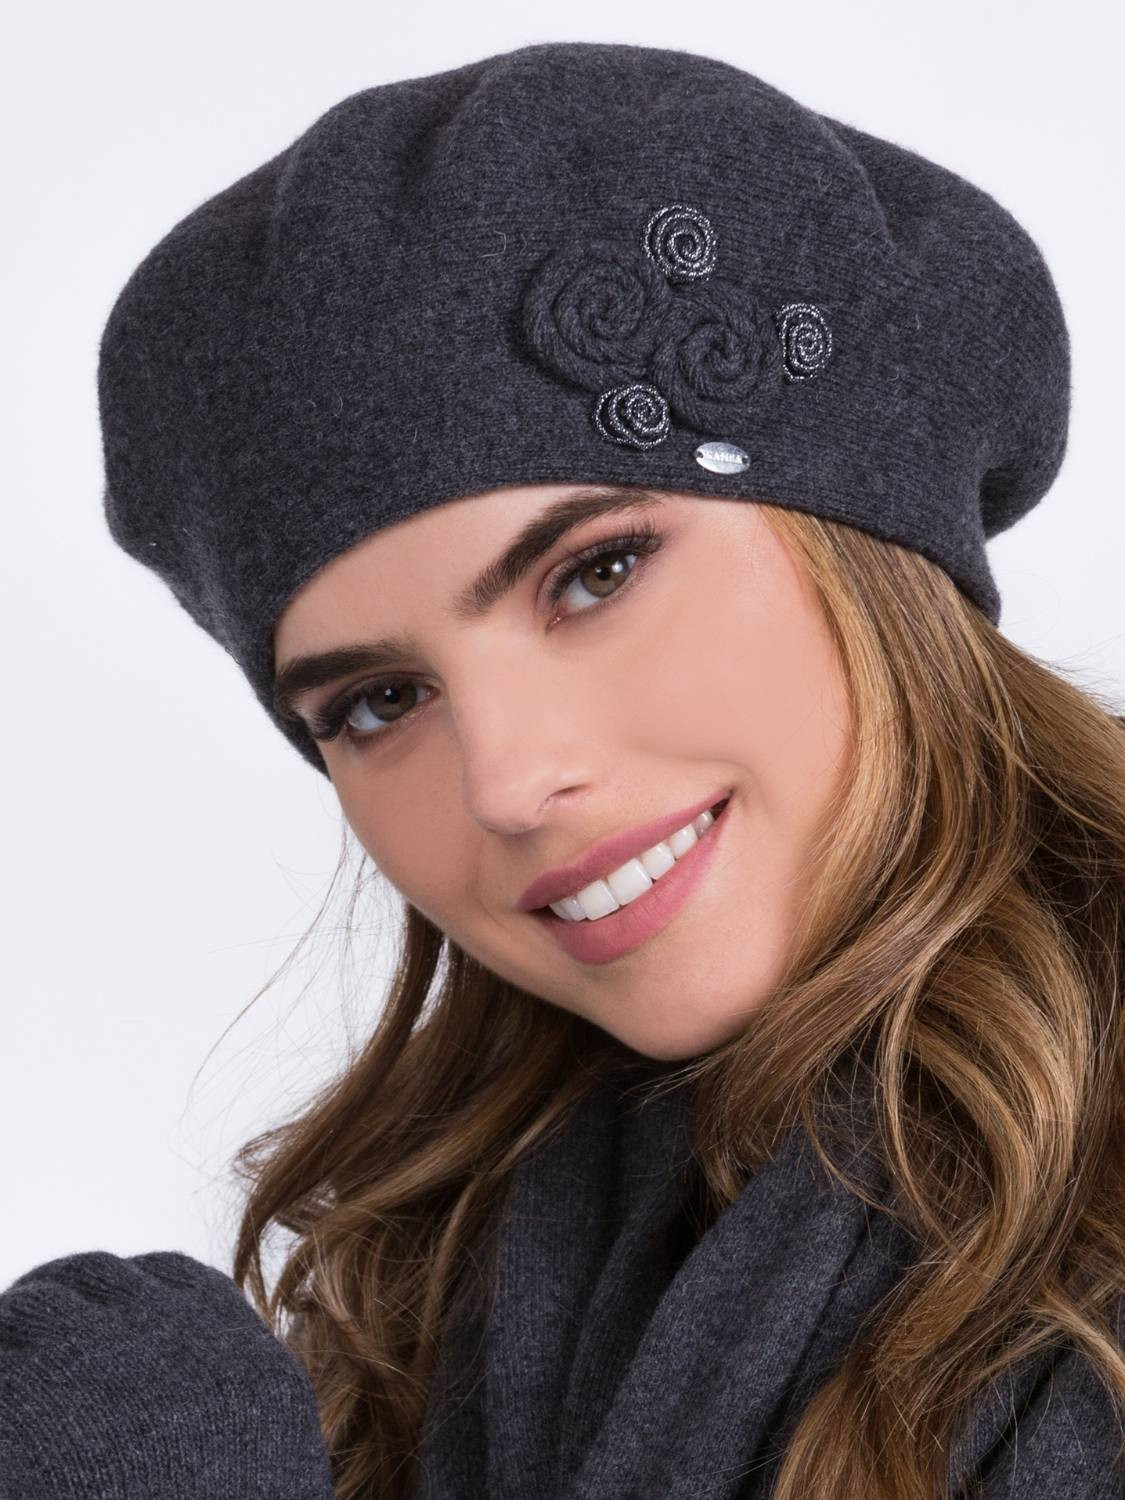 Elegant beret for women, BIRMA_07